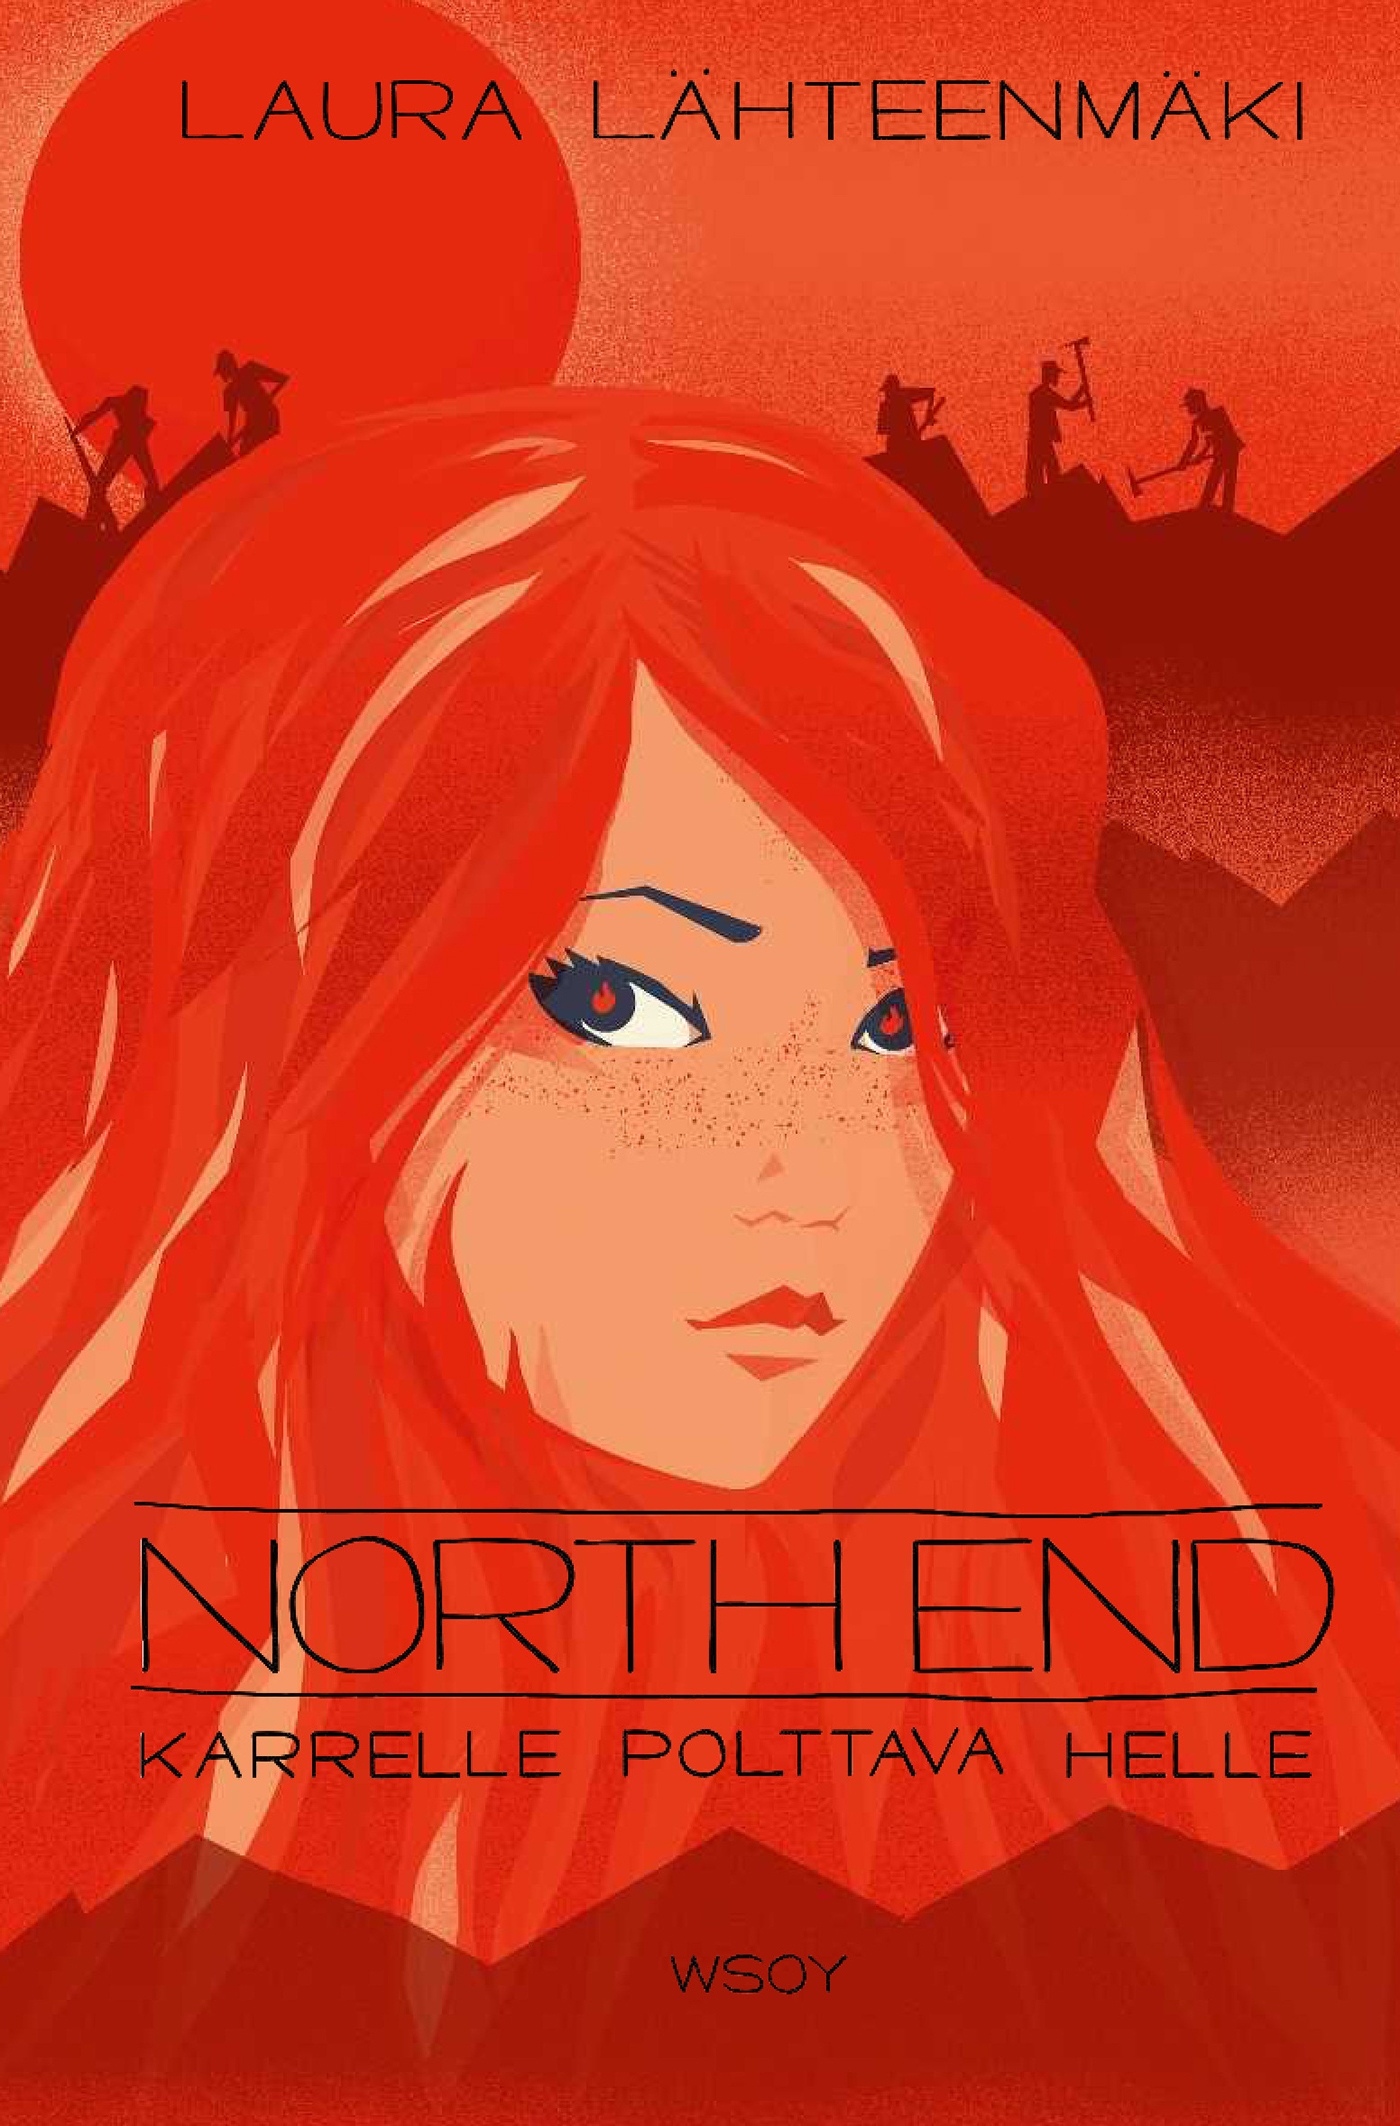 Lähteenmäki, Laura - Karrelle polttava helle - North End 3, ebook